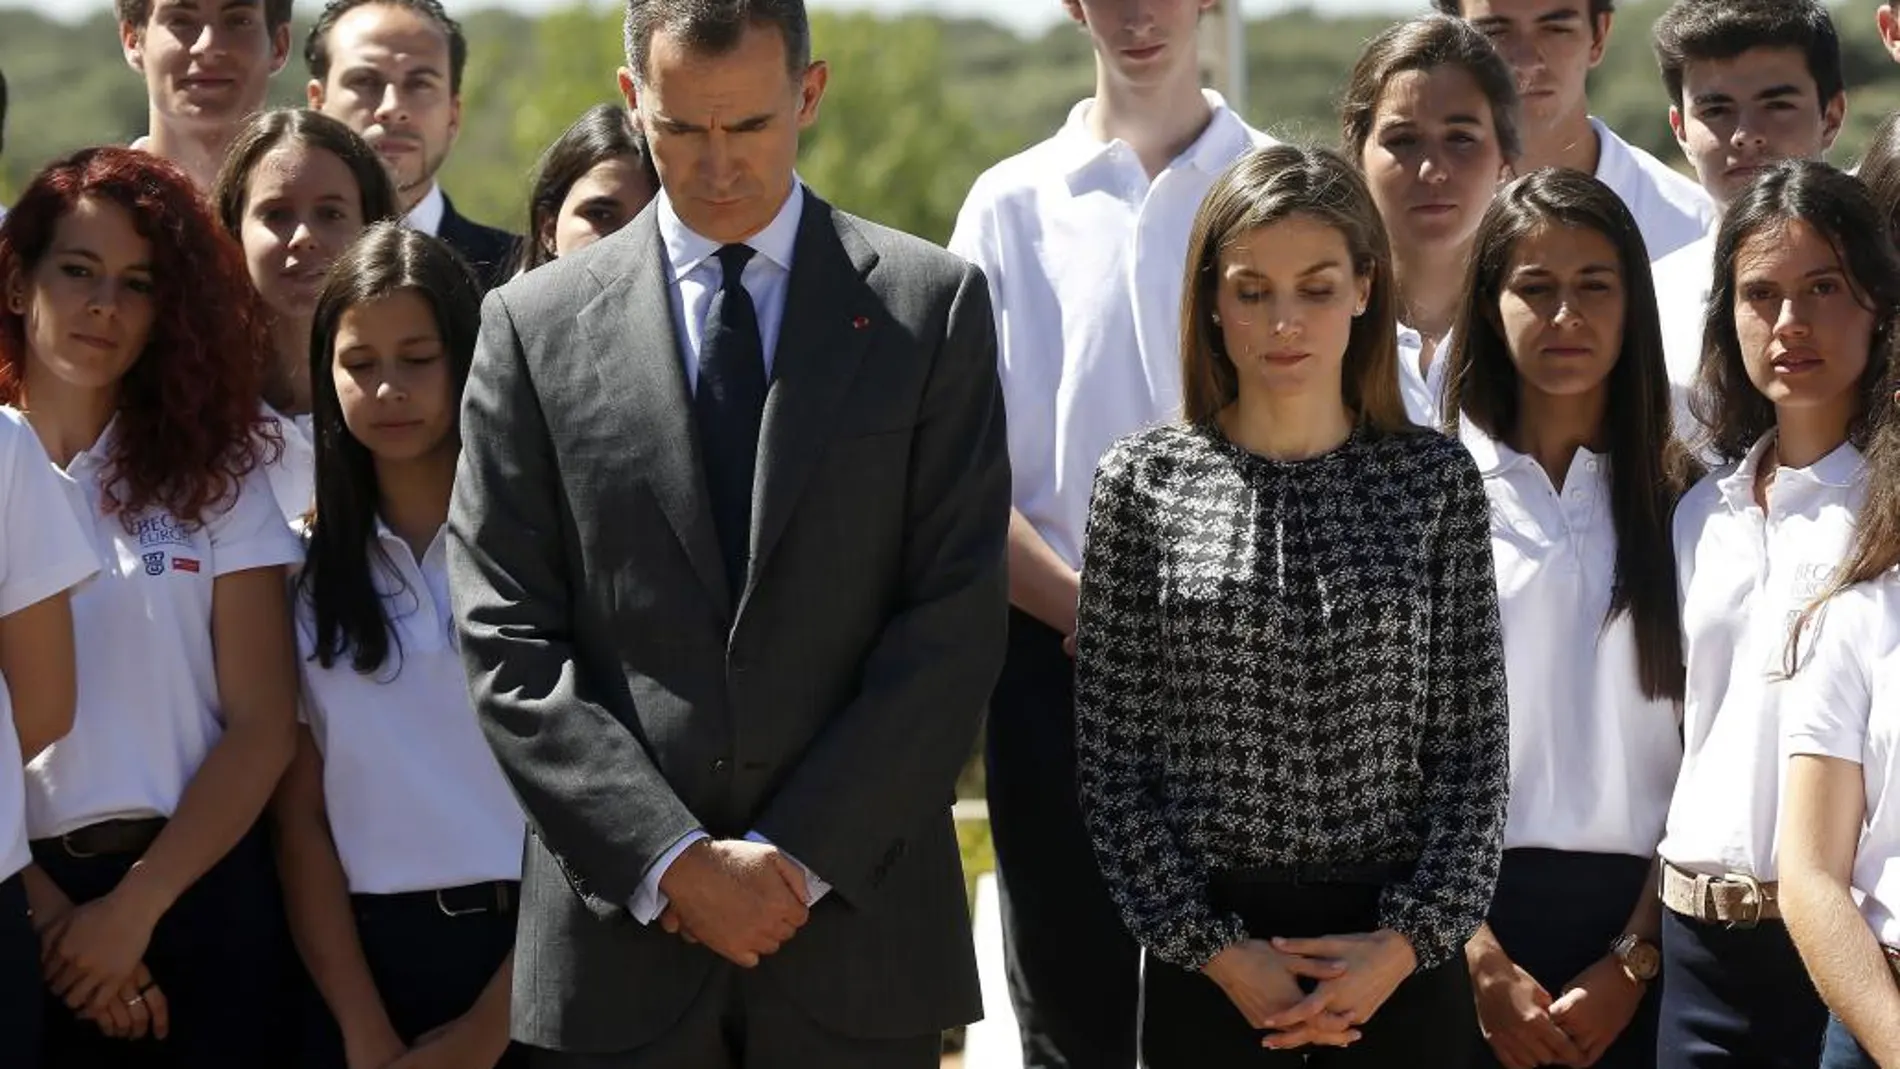 Los Reyes acompañados por los estudiantes del programa de "Becas Europa"guardaron un minuto de silencio en el exterior del Palacio de la Zarzuela en memoria de las víctimas del atentado en Niza